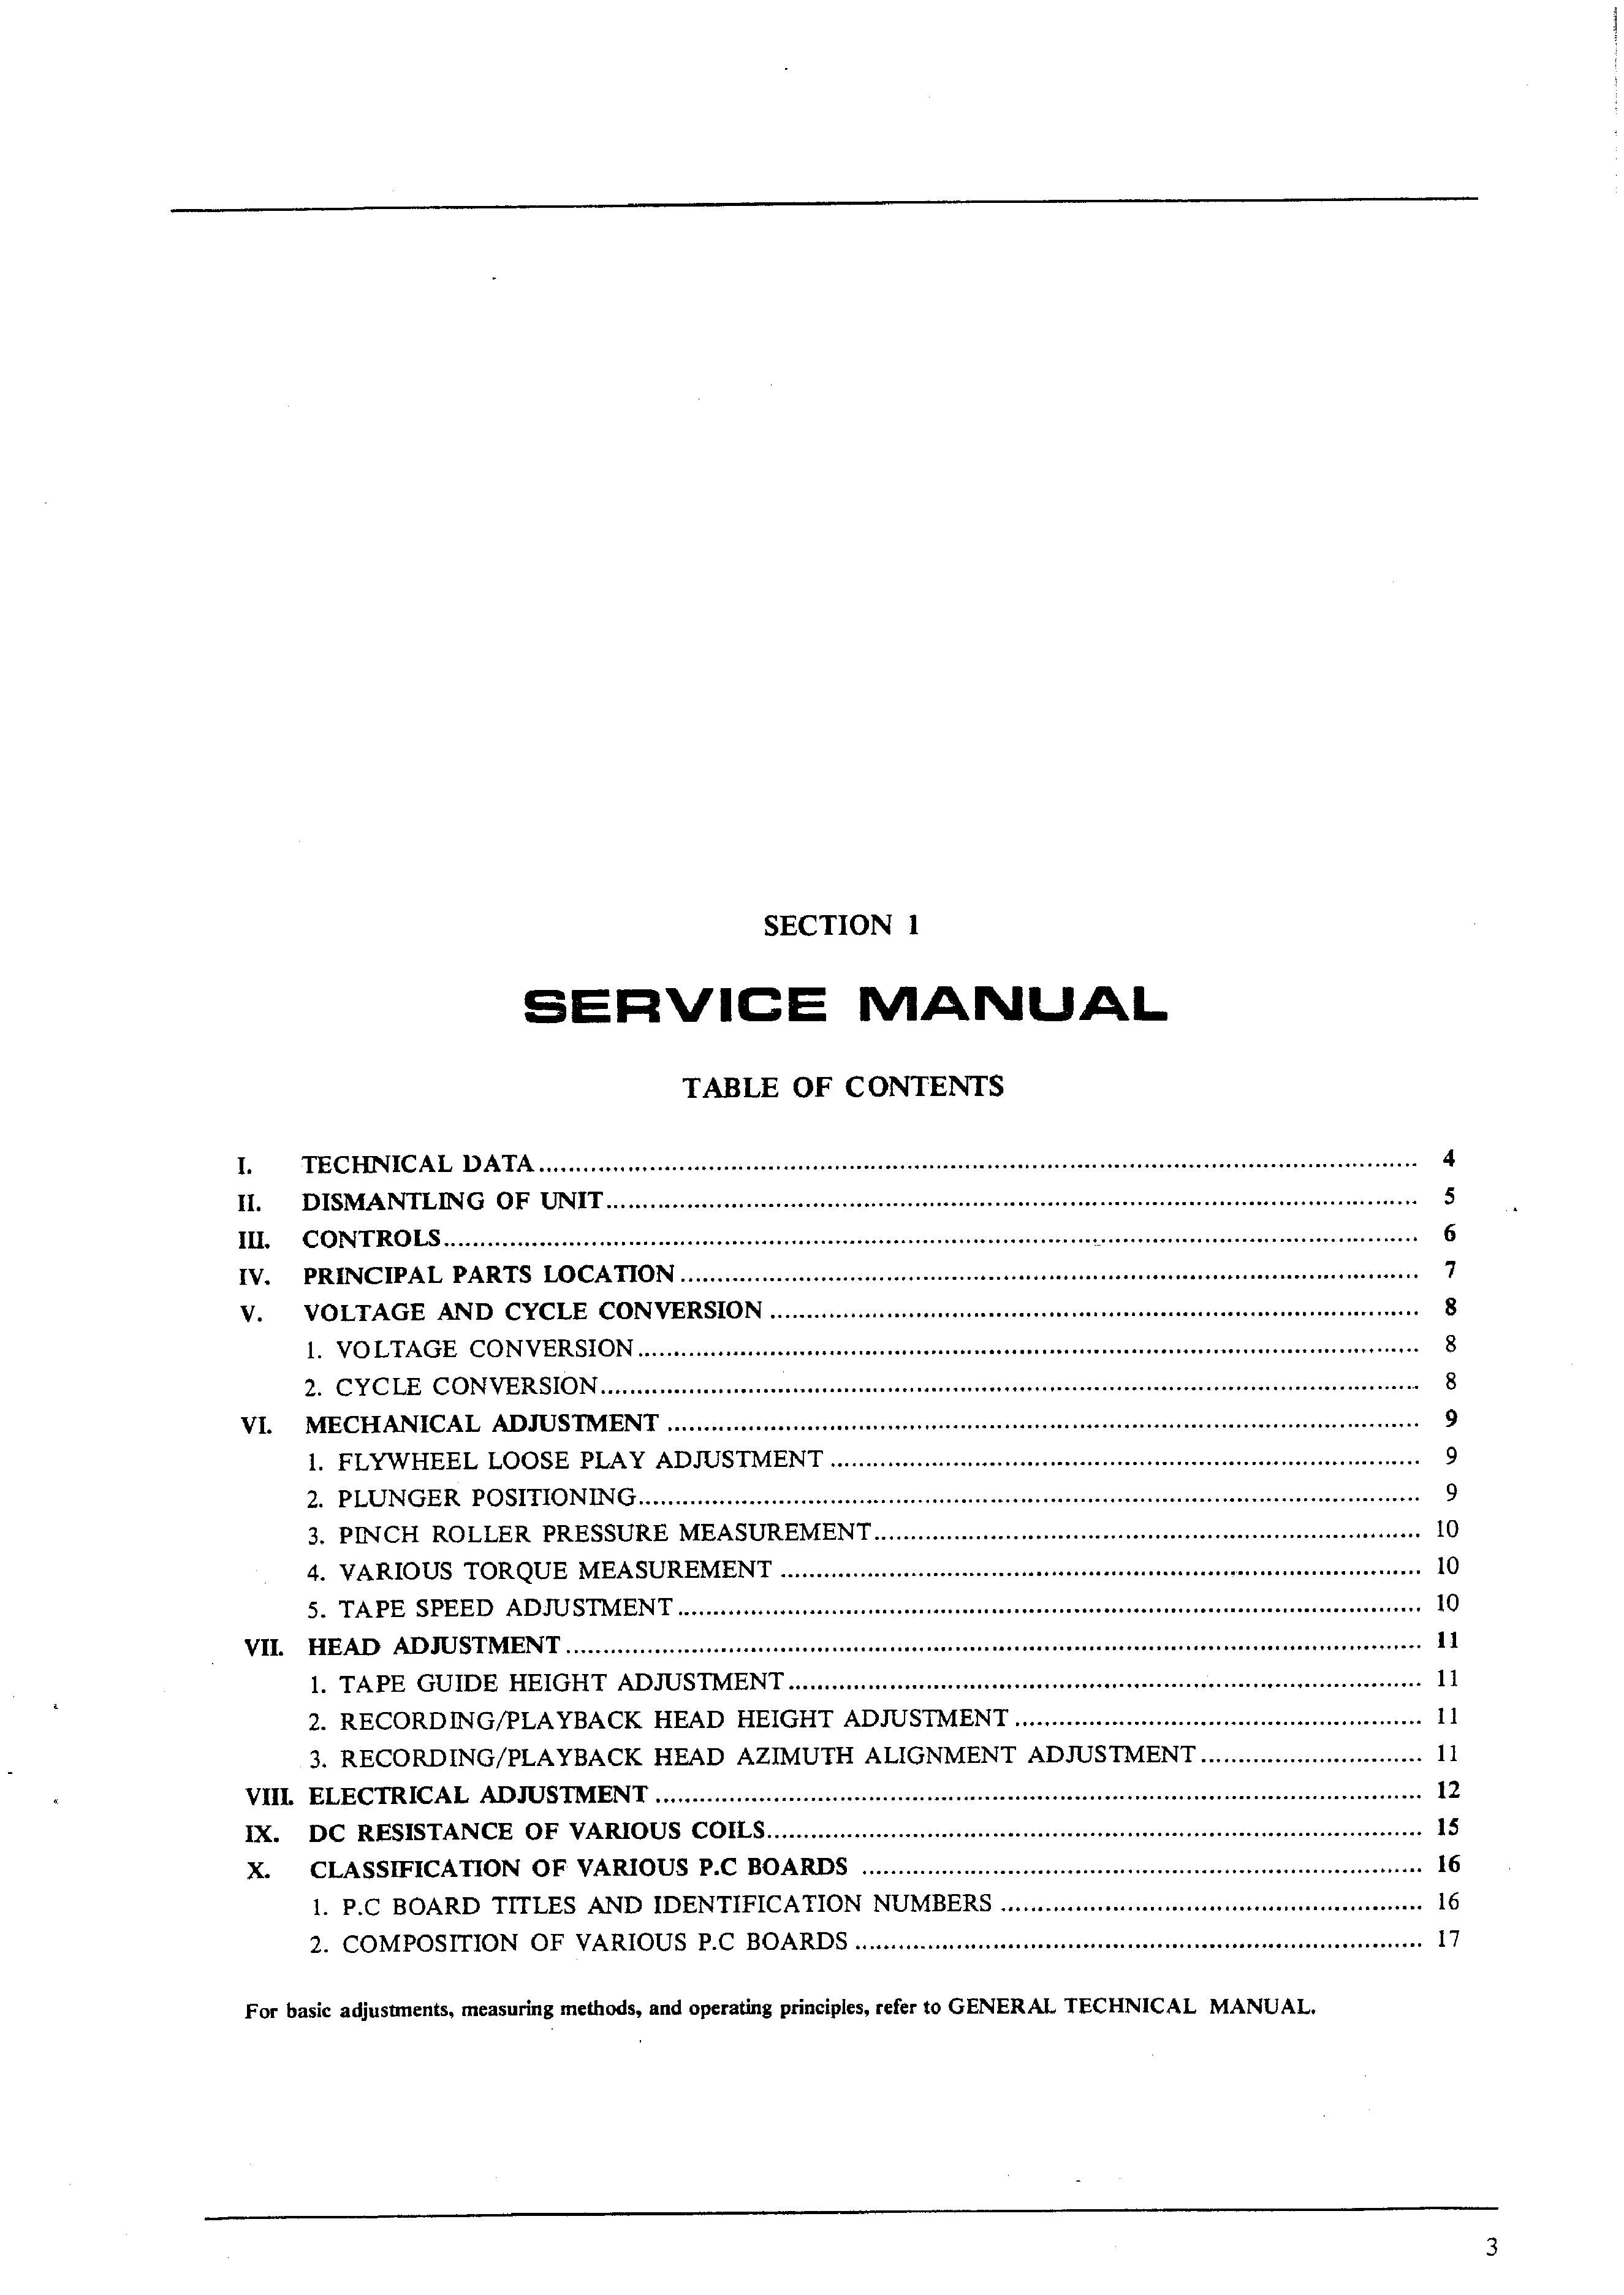 ORIGINALI Service Manual Schema Elettrico AKAI gx-f15 